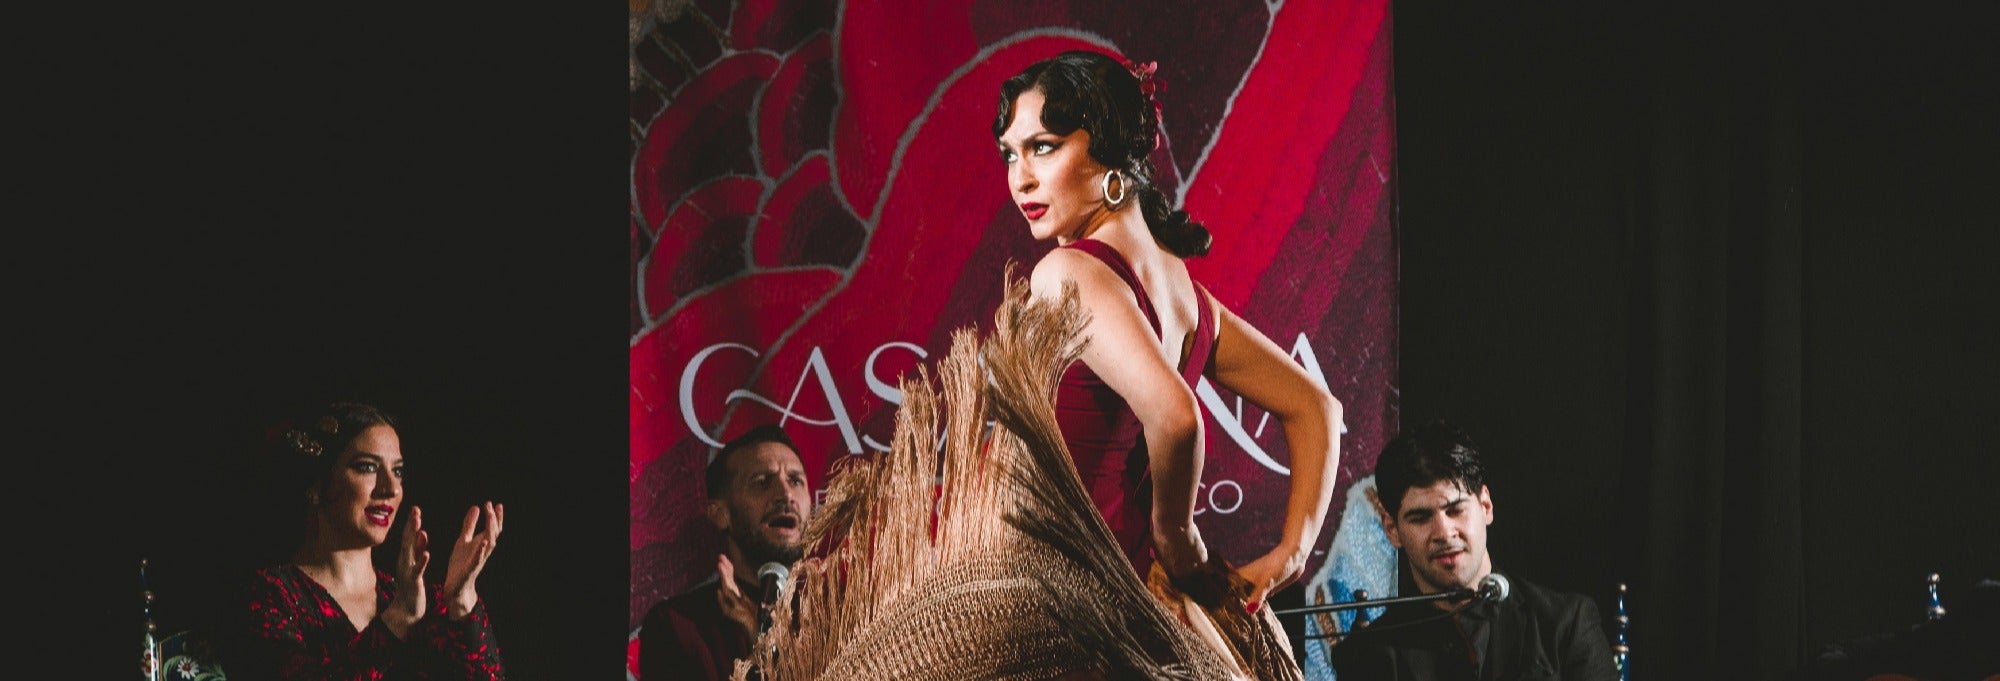 Espectáculo flamenco en el tablao Casa Ana